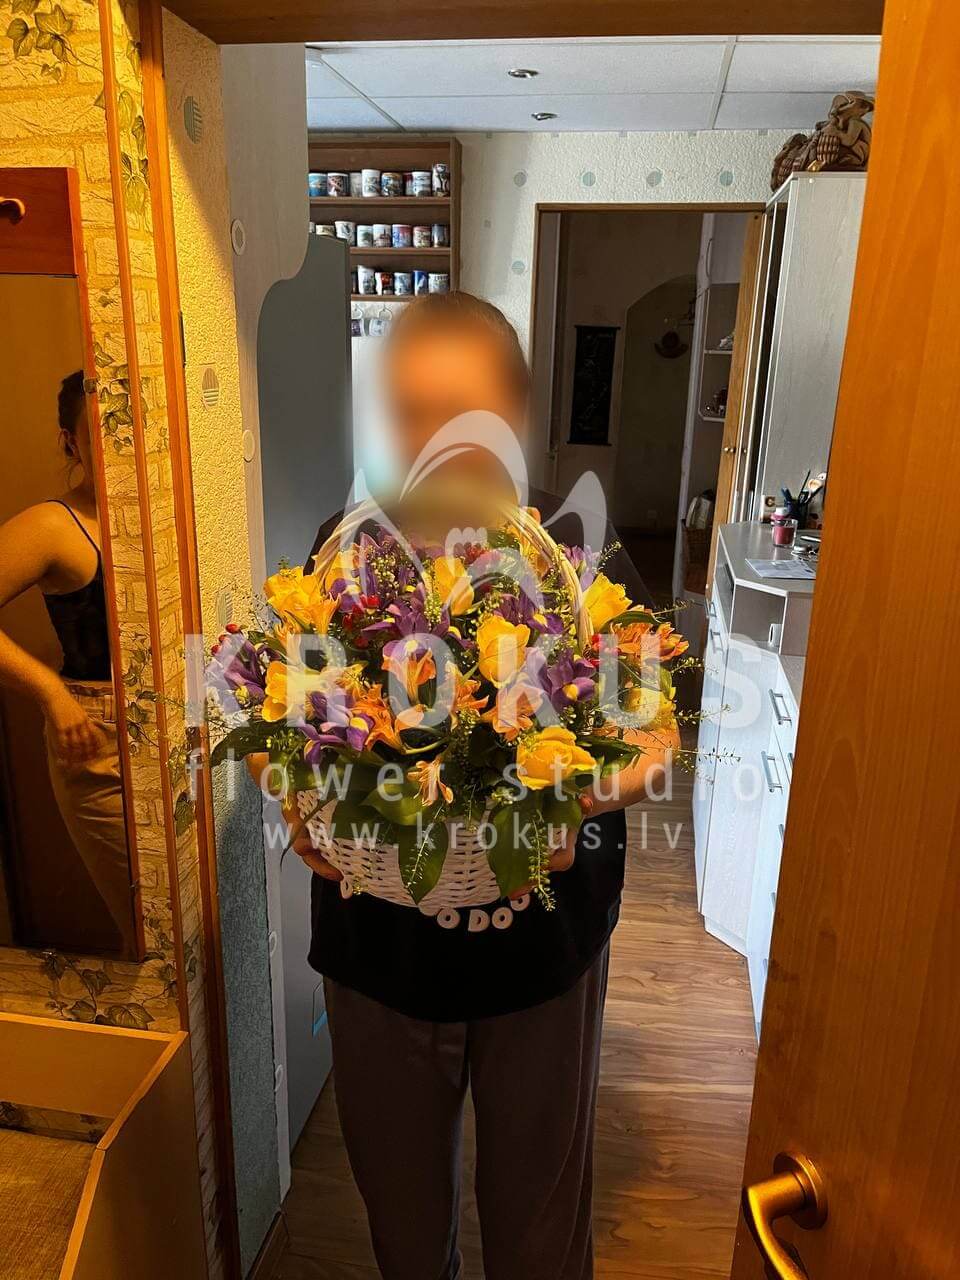 Доставка цветов в город Рига (папоротникирисыальстромериягиперикумжелтые розысалал)